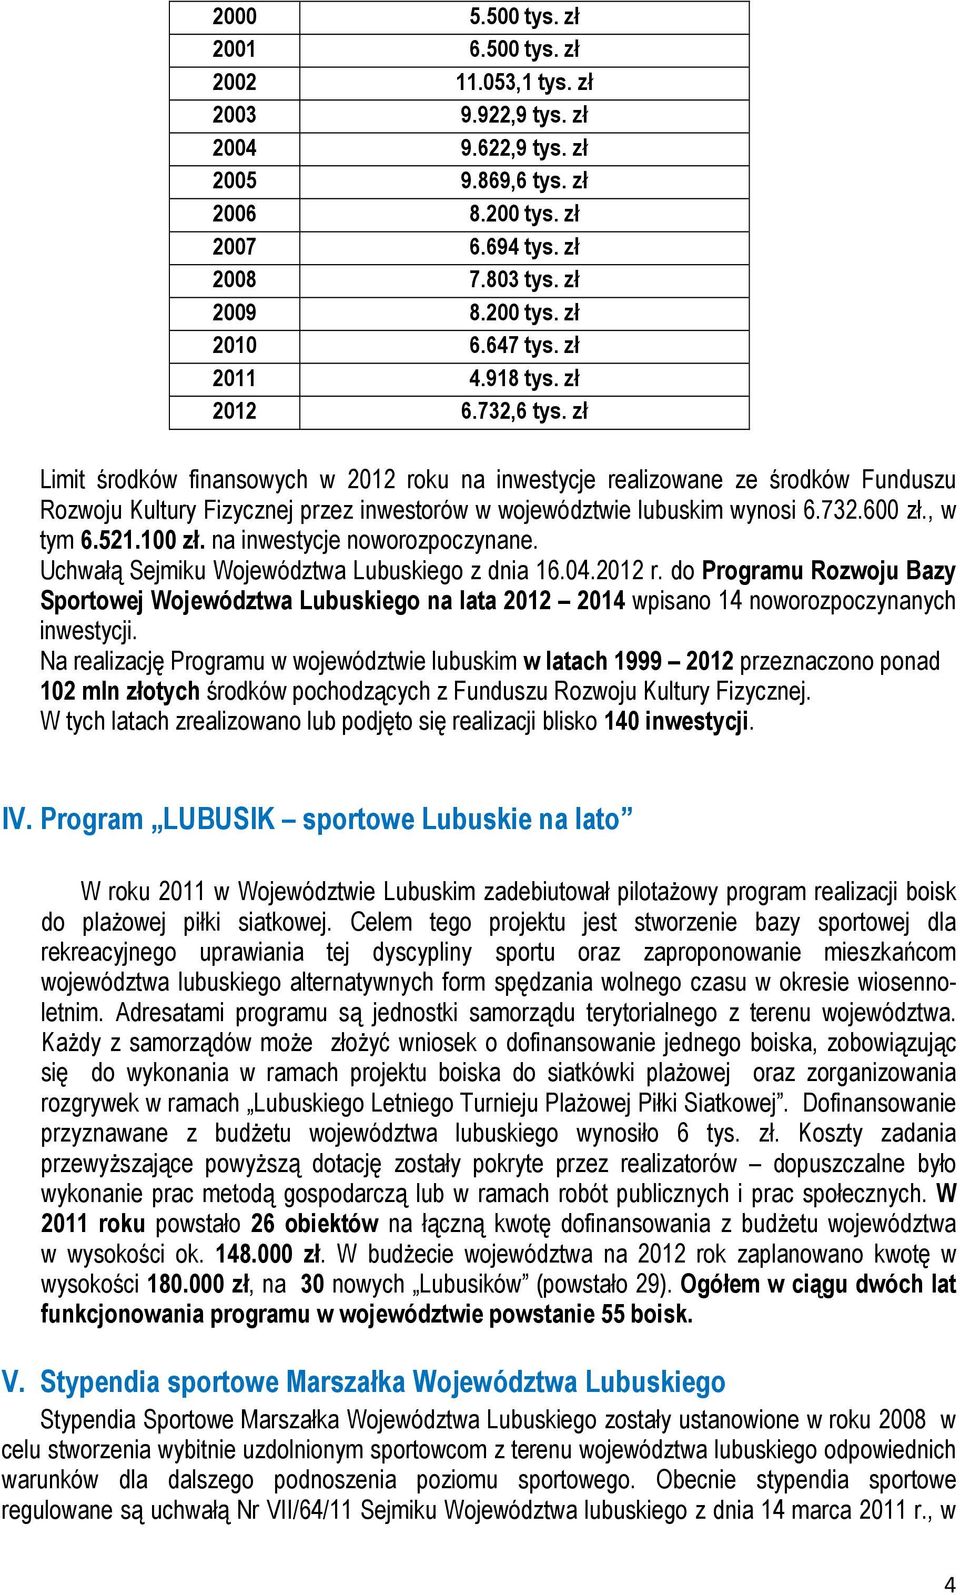 zł Limit środków finansowych w 2012 roku na inwestycje realizowane ze środków Funduszu Rozwoju Kultury Fizycznej przez inwestorów w województwie lubuskim wynosi 6.732.600 zł., w tym 6.521.100 zł.